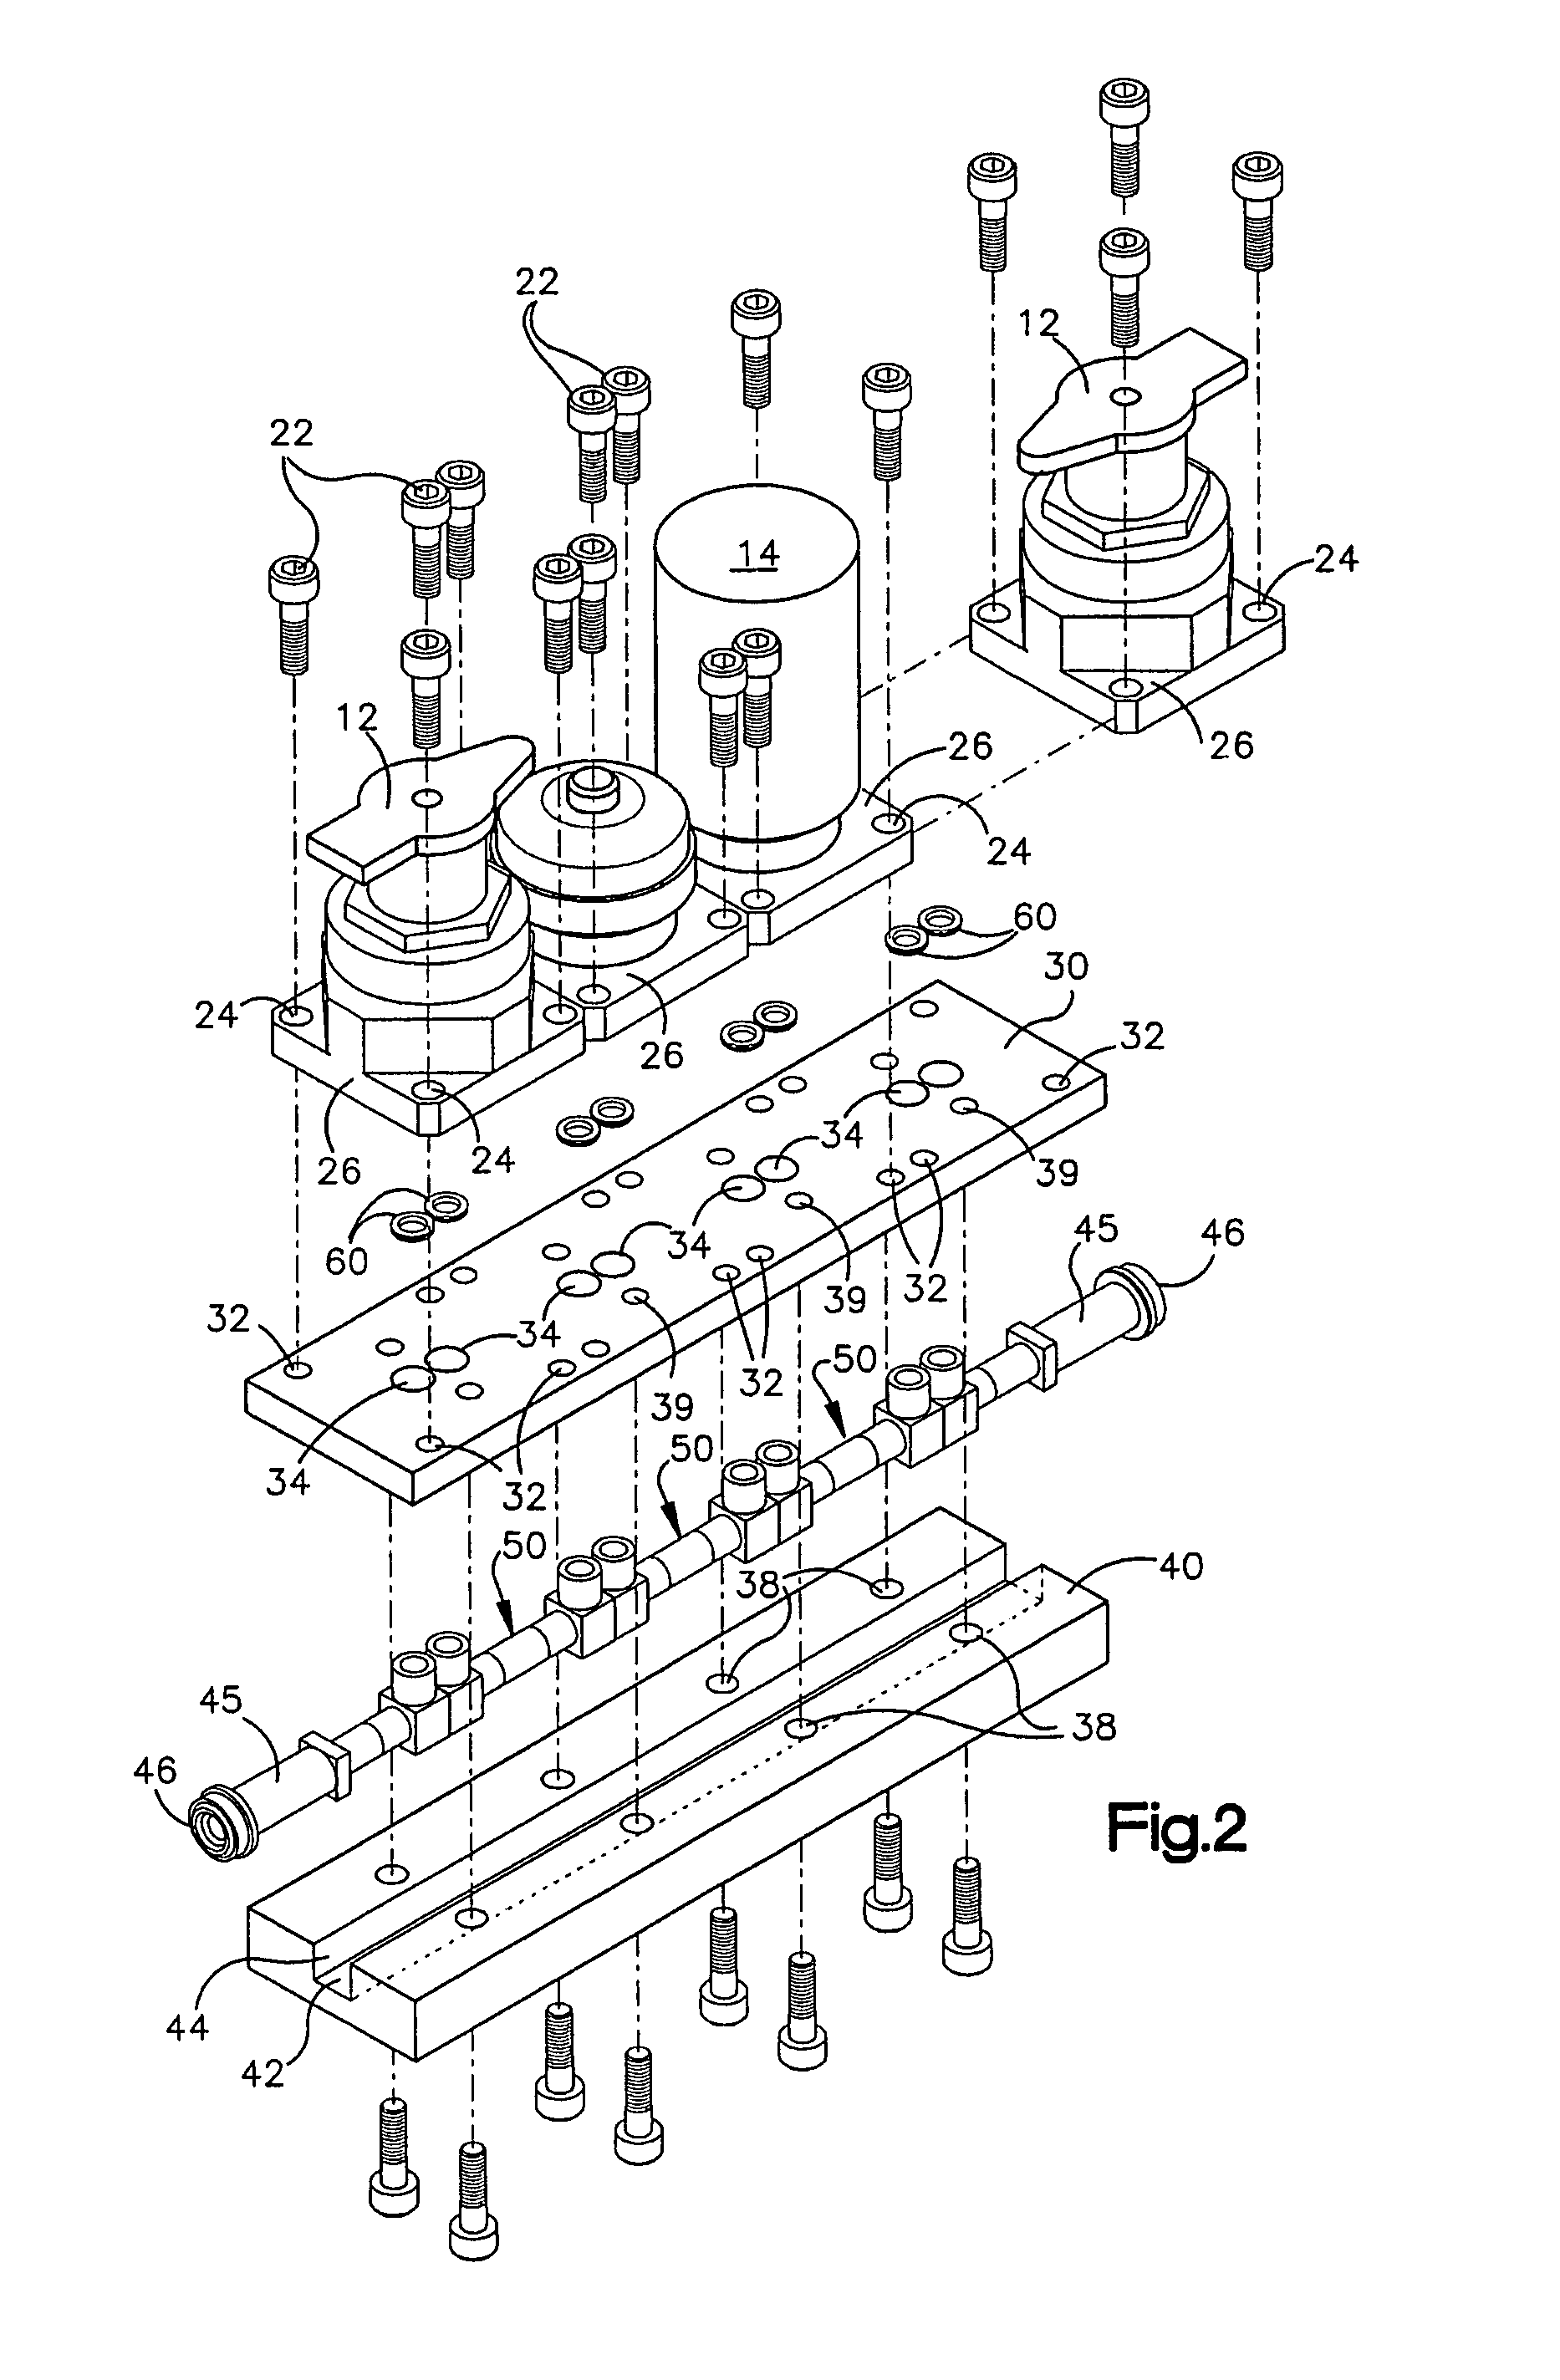 Modular surface mount manifold assemblies